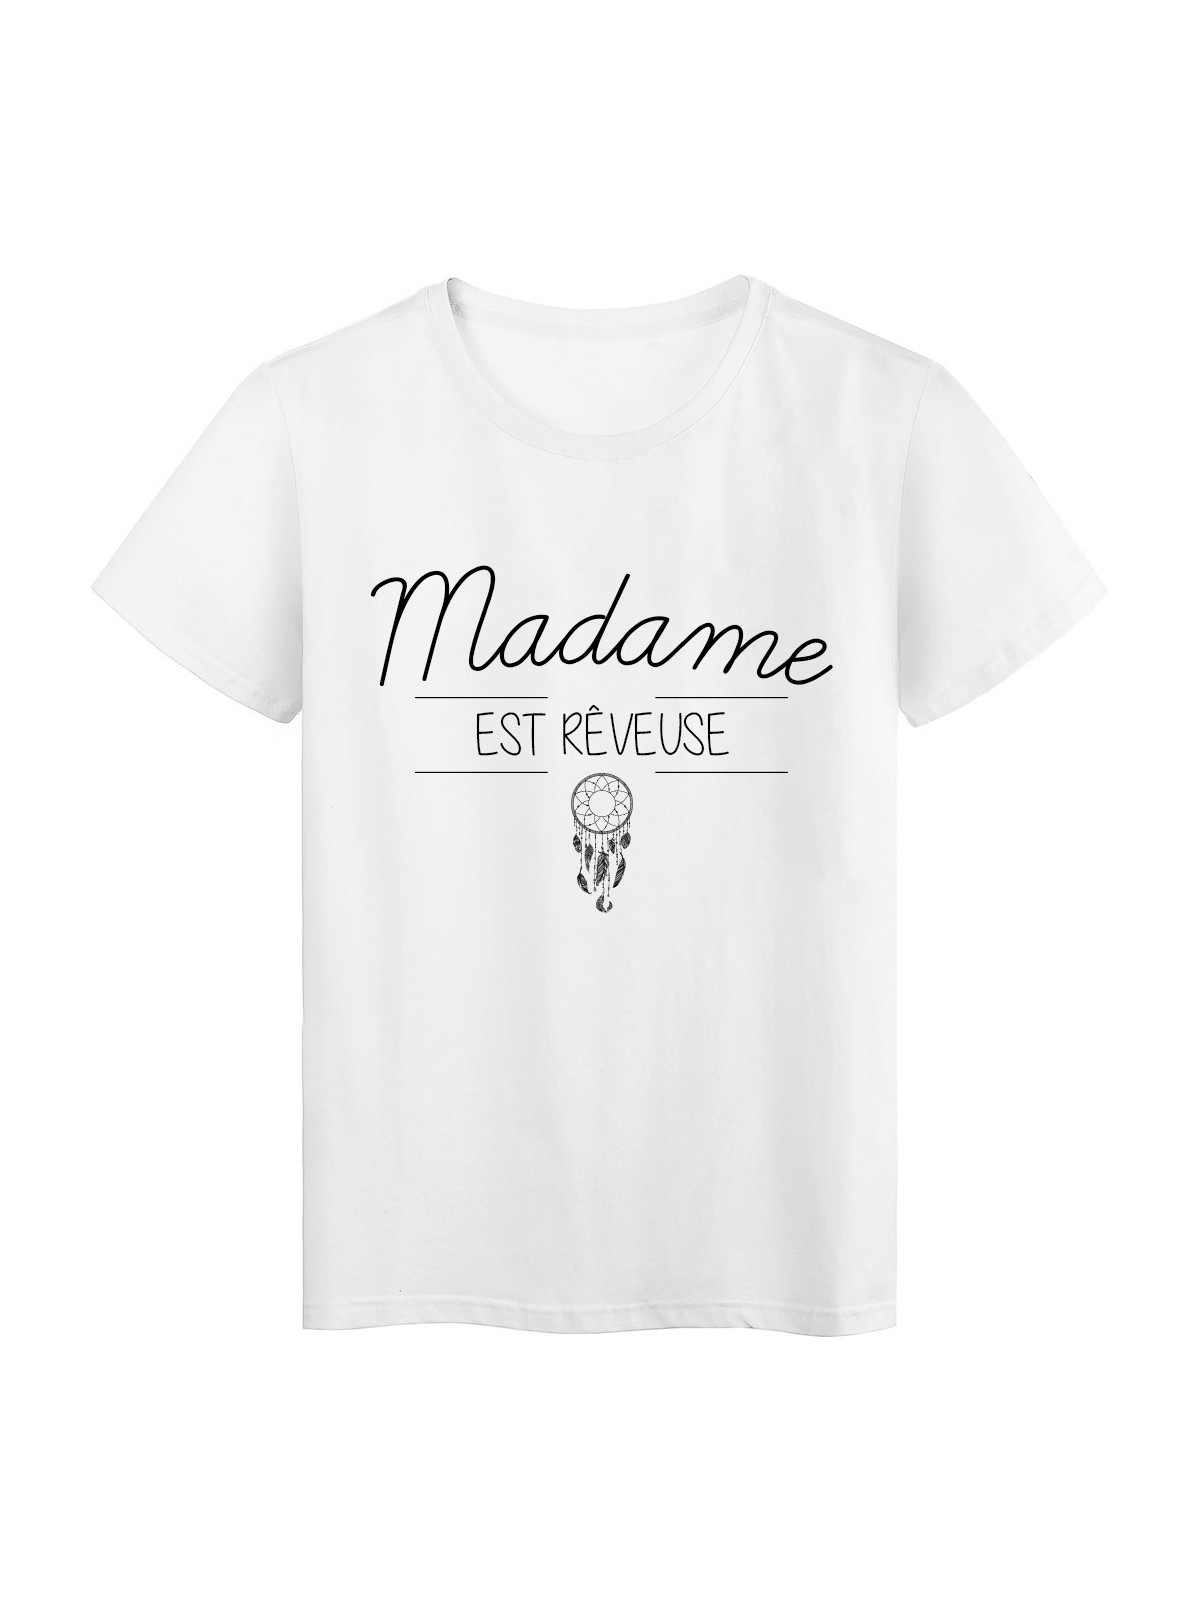 T-Shirt imprimÃ© humour design Madame est rÃªveuse rÃ©f 2209